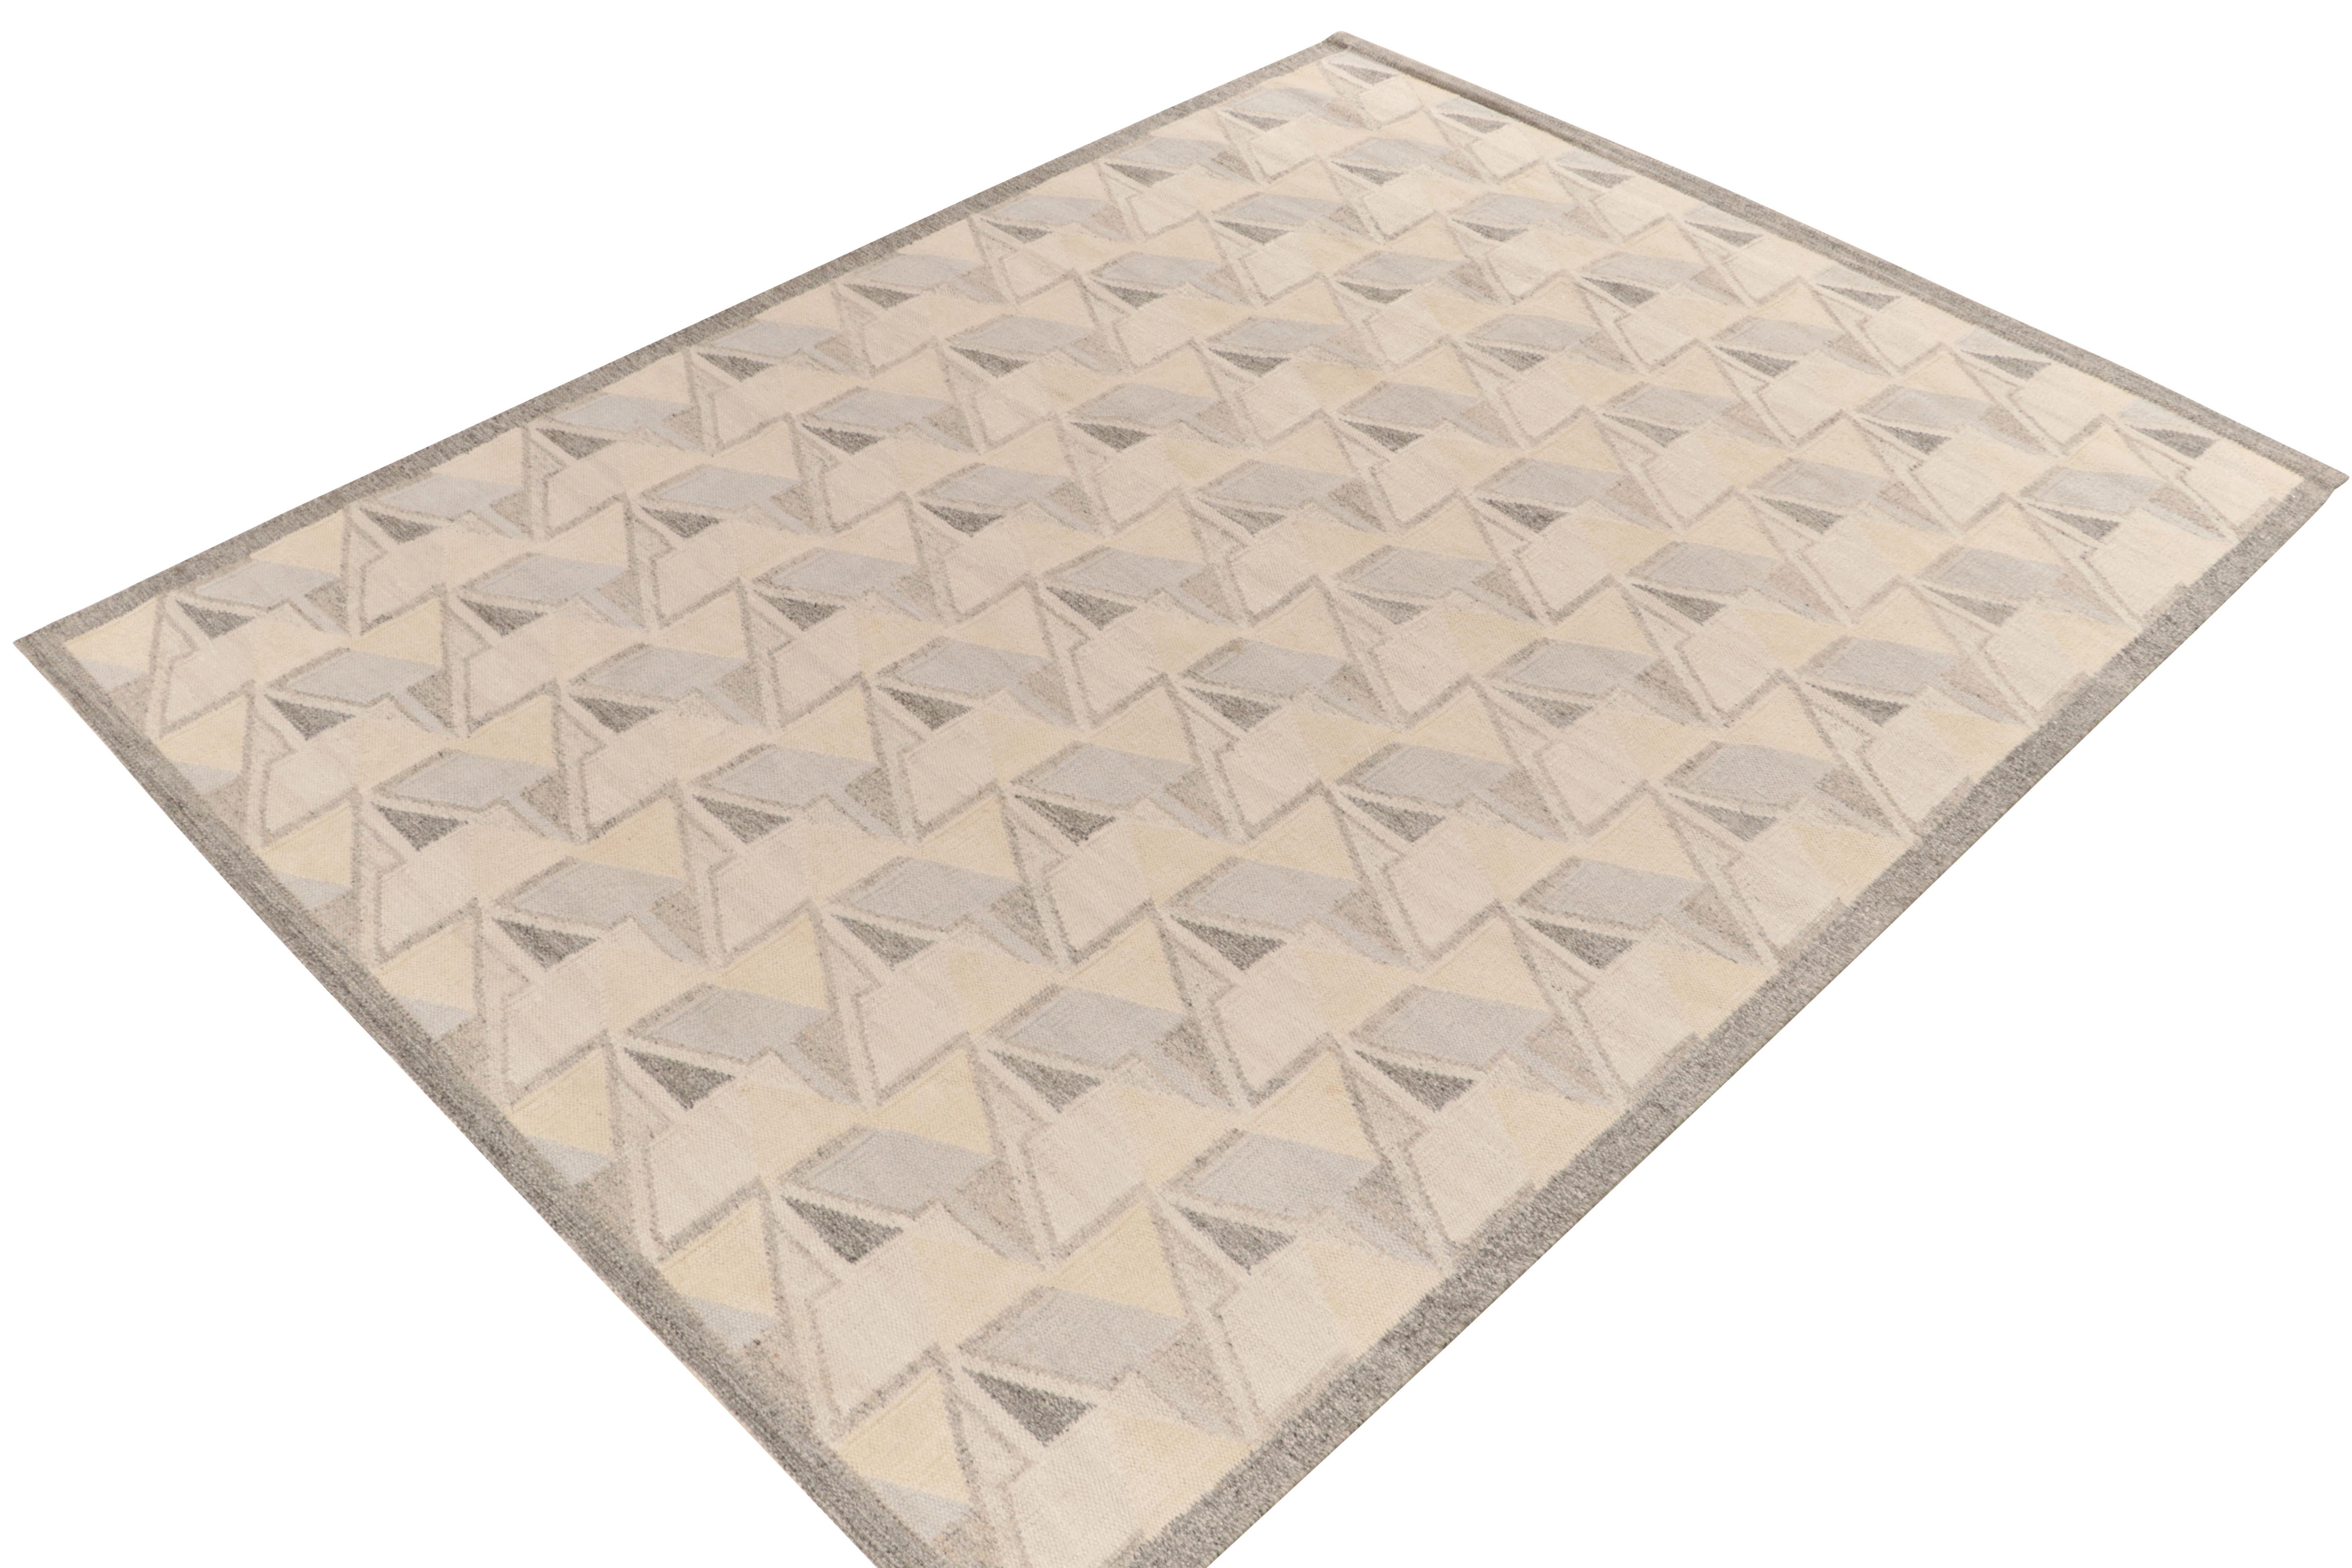 Le kilim de style scandinave de Rug & Kilim est issu de notre célèbre collection de tissage plat. Ce tapis 6x9 bénéficie de la finesse de l'esthétique suédoise avec un motif géométrique dextre qui donne une impression de 3D. La gamme de couleurs en